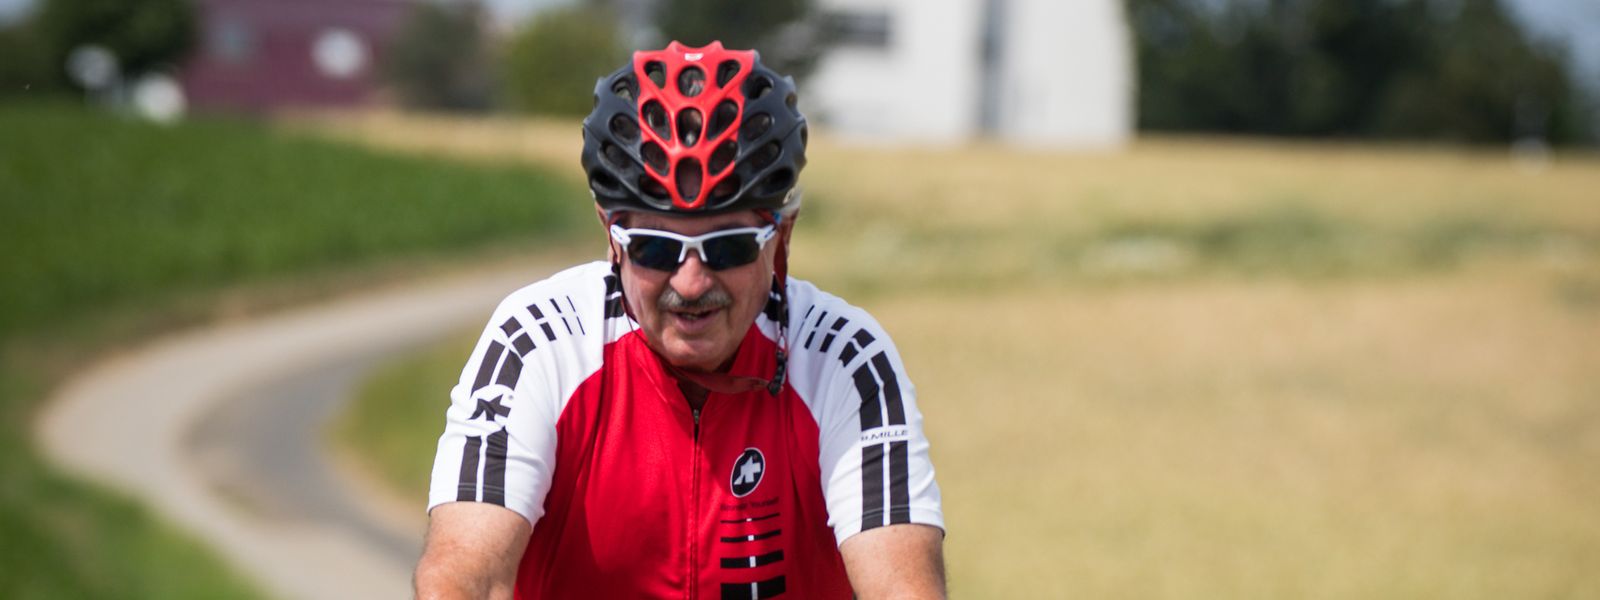 Ministro luxemburguês é um conhecido amante do ciclismo.